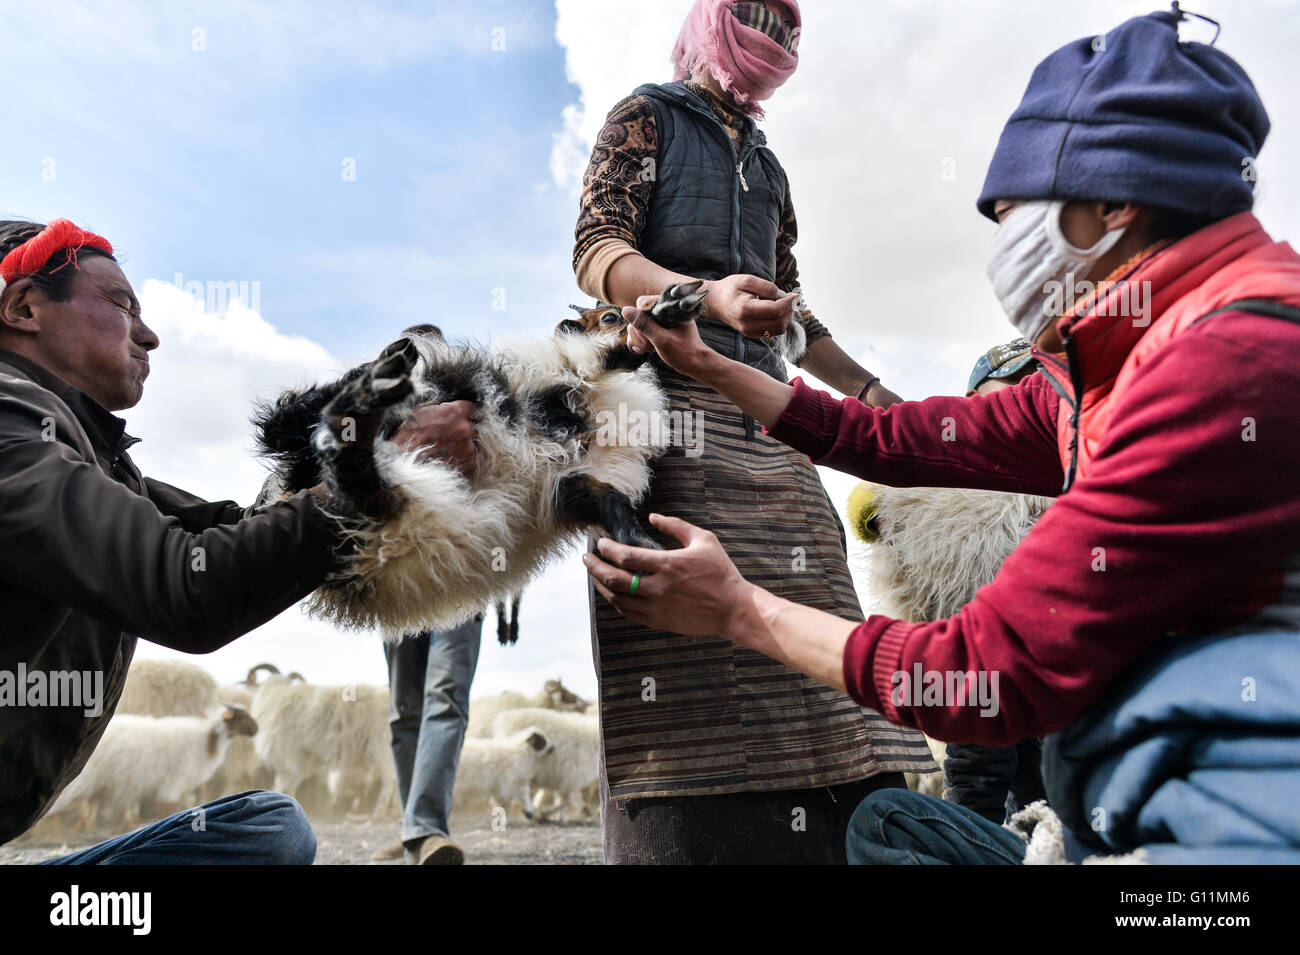 Lhasa, China la Región Autónoma del Tíbet. 5 de mayo, 2016. Los pastores se preparan para castrar ovinos machos en la rivera de Nam Co, en el suroeste de la Región Autónoma del Tíbet de China, 5 de mayo de 2016. Una ceremonia de castración de ovejas, que se ha observado durante más de 1.000 años por los pastores que viven en la parte norte de la región del Tíbet, se celebró en la rivera de Nam Co. con el fin de criar ovejas de la mejor calidad, a pesar de unos robustos ovinos machos, la mayoría de los ovinos machos de más de 5 meses de edad aquí serán castrados y cordero criado como ovejas. © Purbu Zhaxi/Xinhua/Alamy Live News Foto de stock